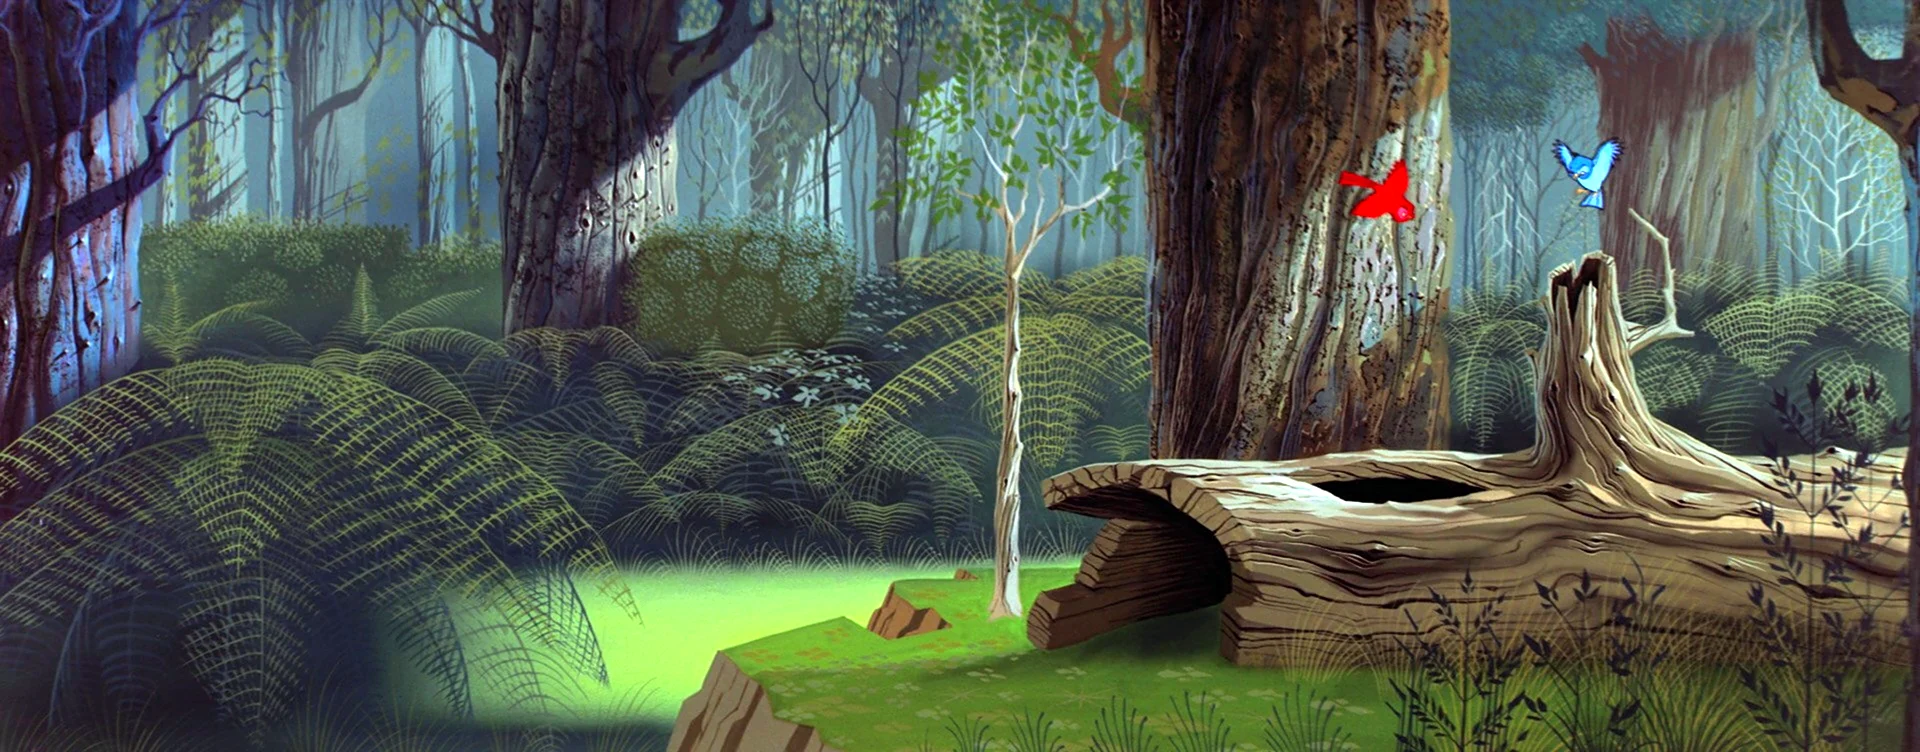 Лес из мультфильма Дисней